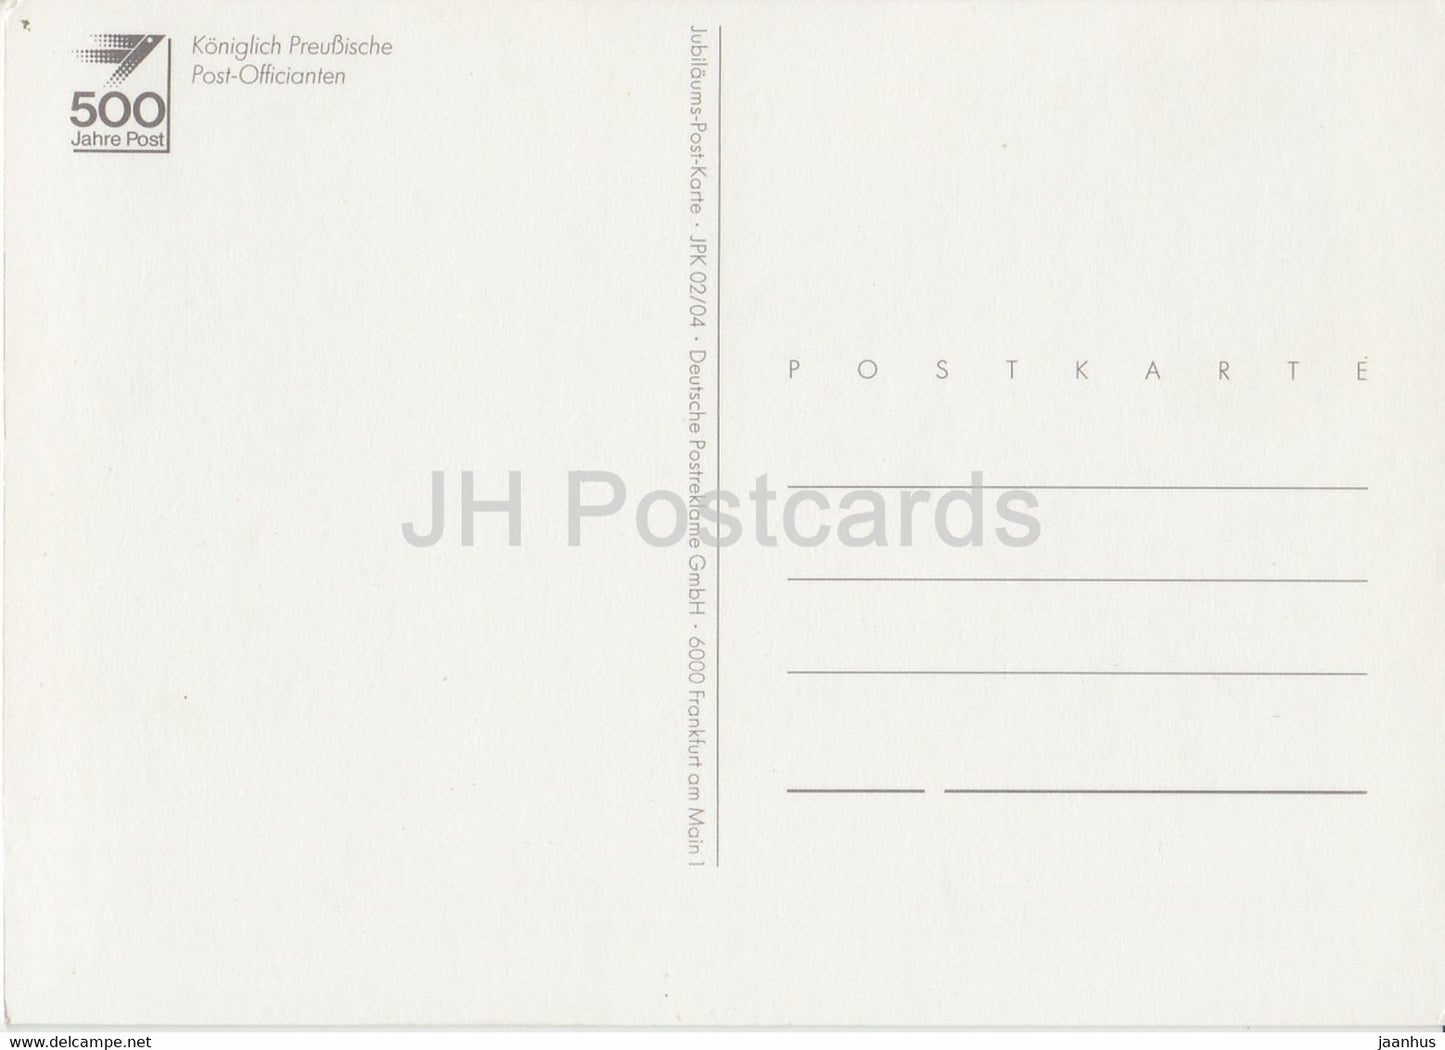 Königlich Preußische Postbeamte - Postboten - Postdienst - Deutschland - unbenutzt